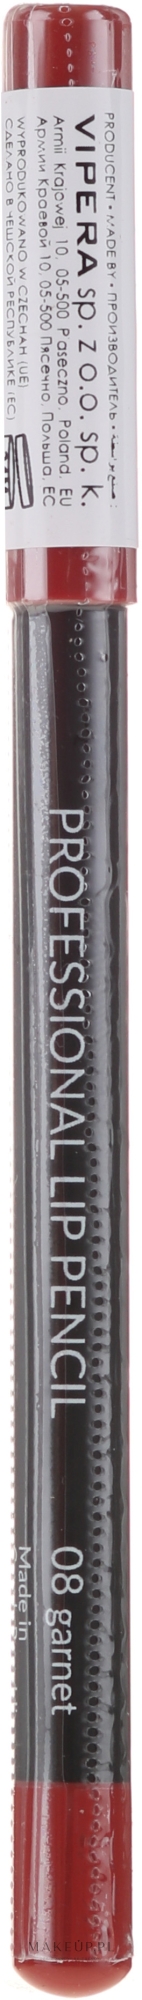 Kredka do ust - Vipera Professional Lip Pencil — Zdjęcie 08 - Garnet